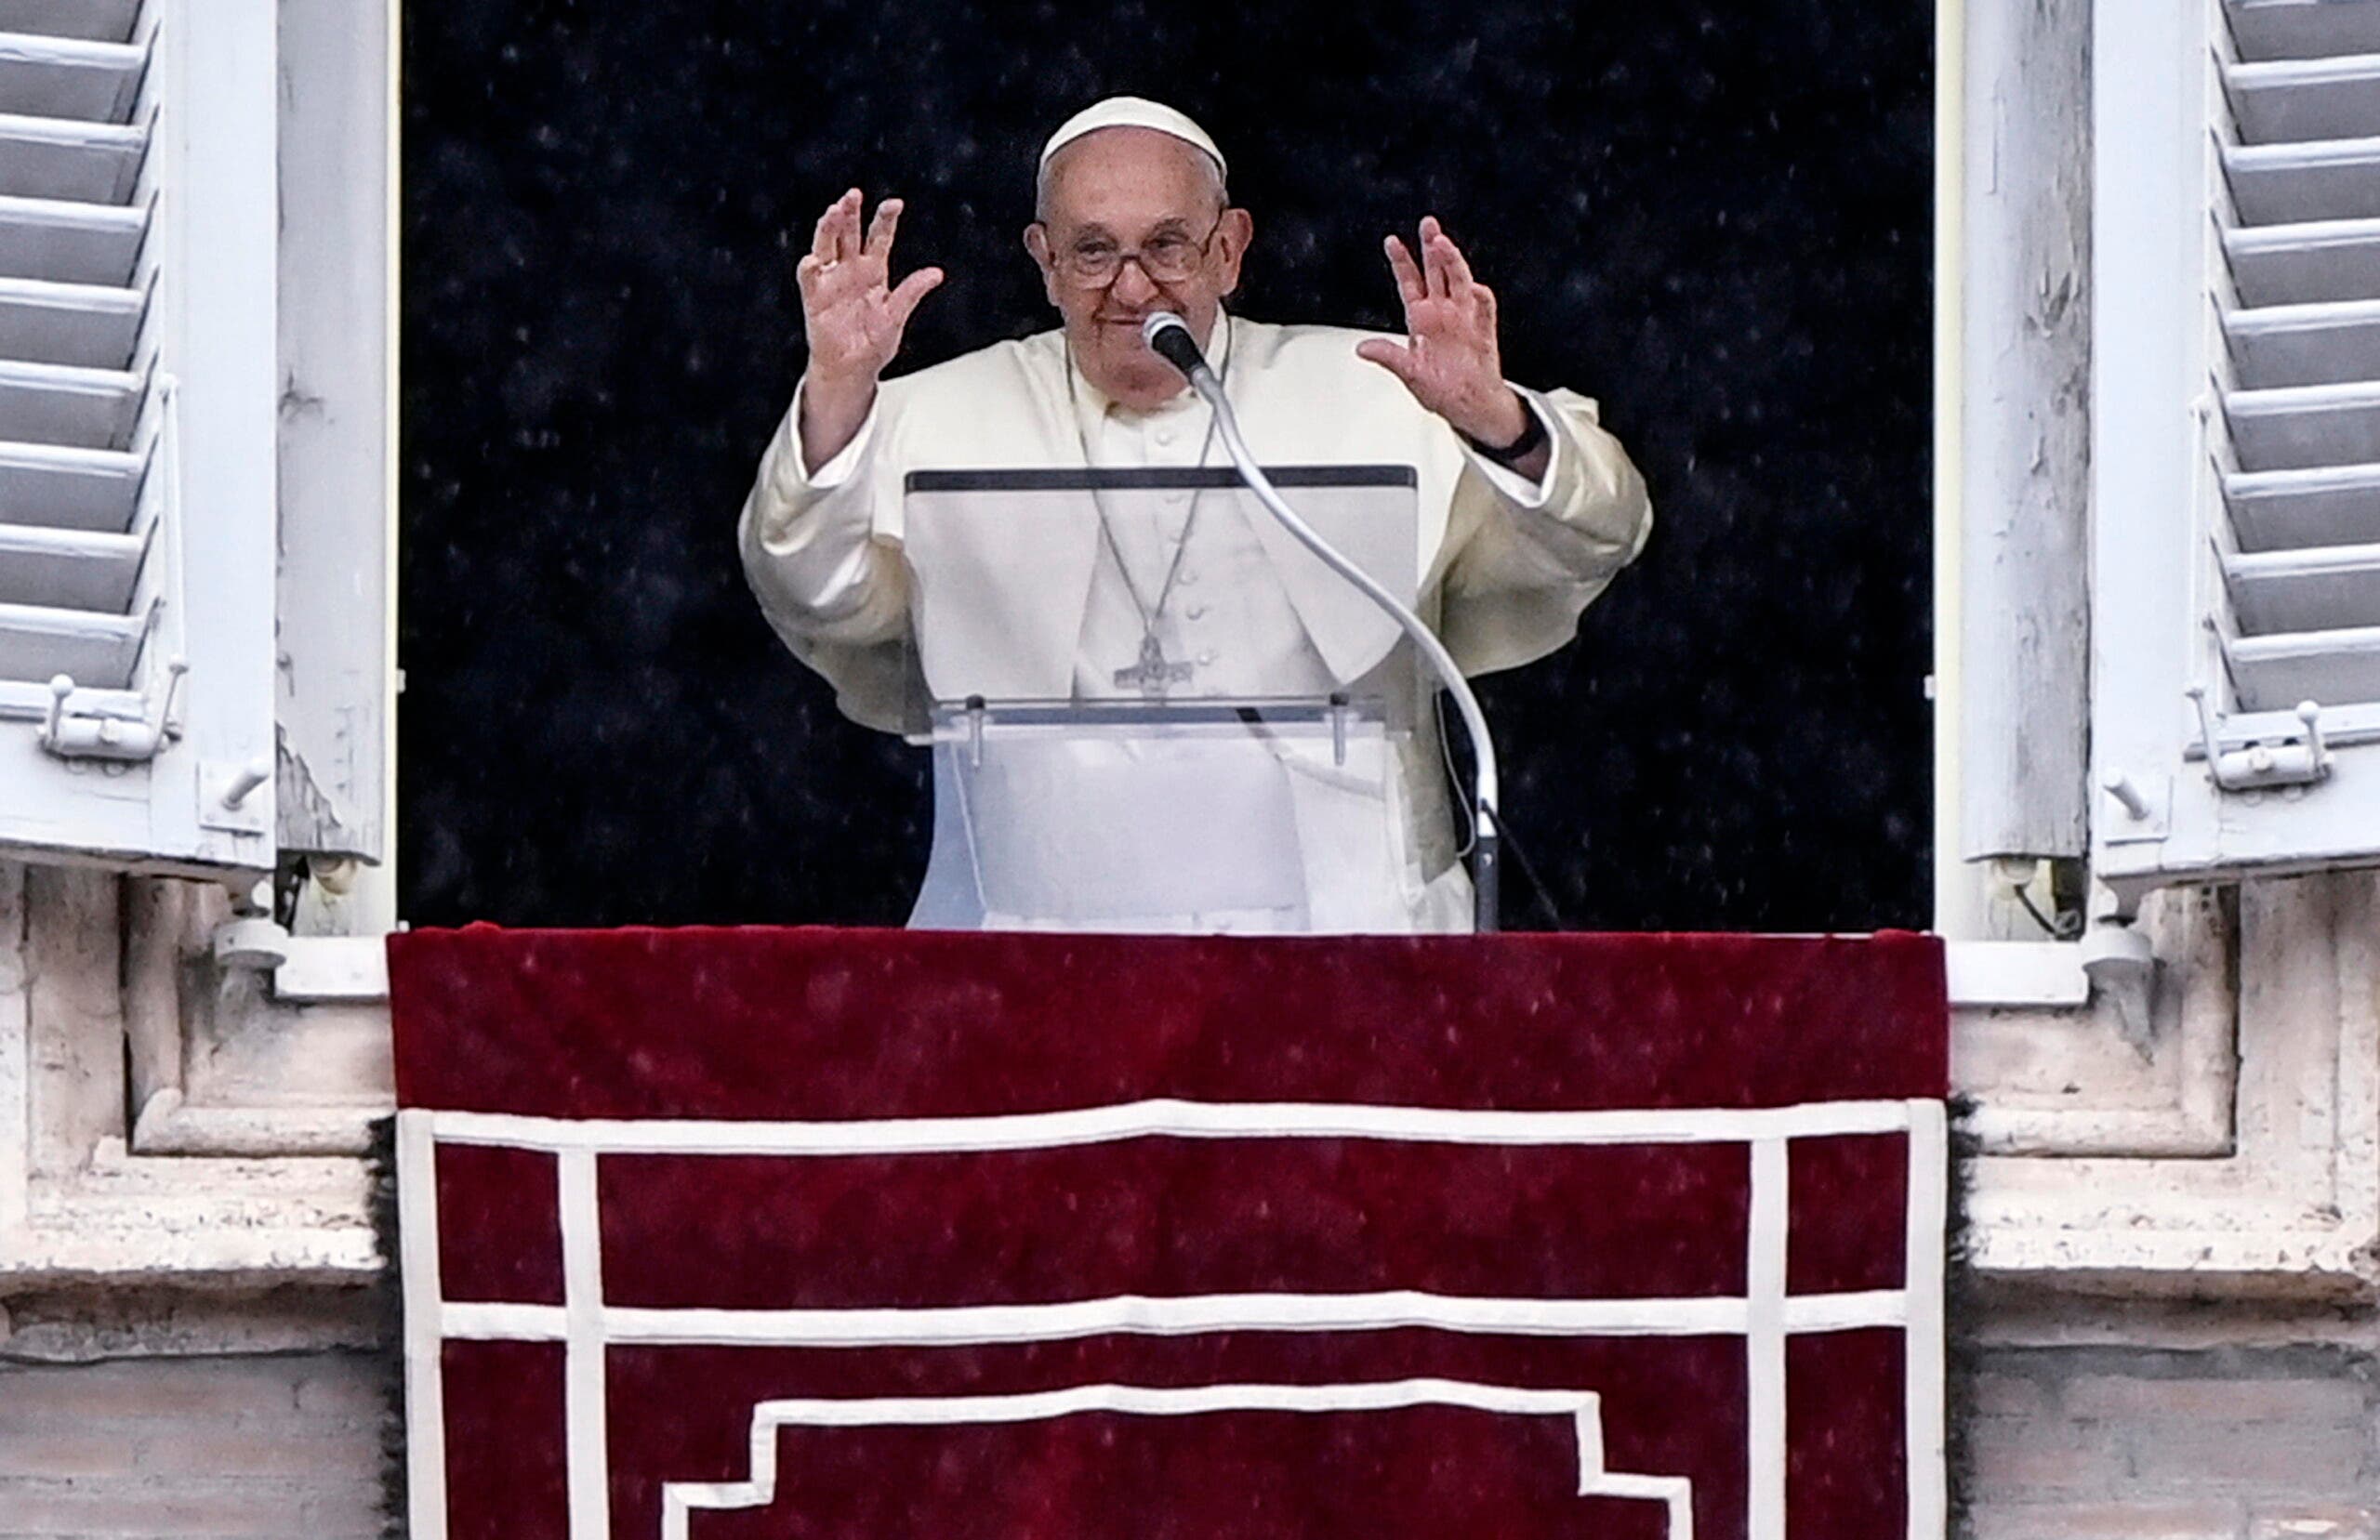 El papa insta a “ser sobrios” y compartir recursos para que todo el mundo viva dignamente